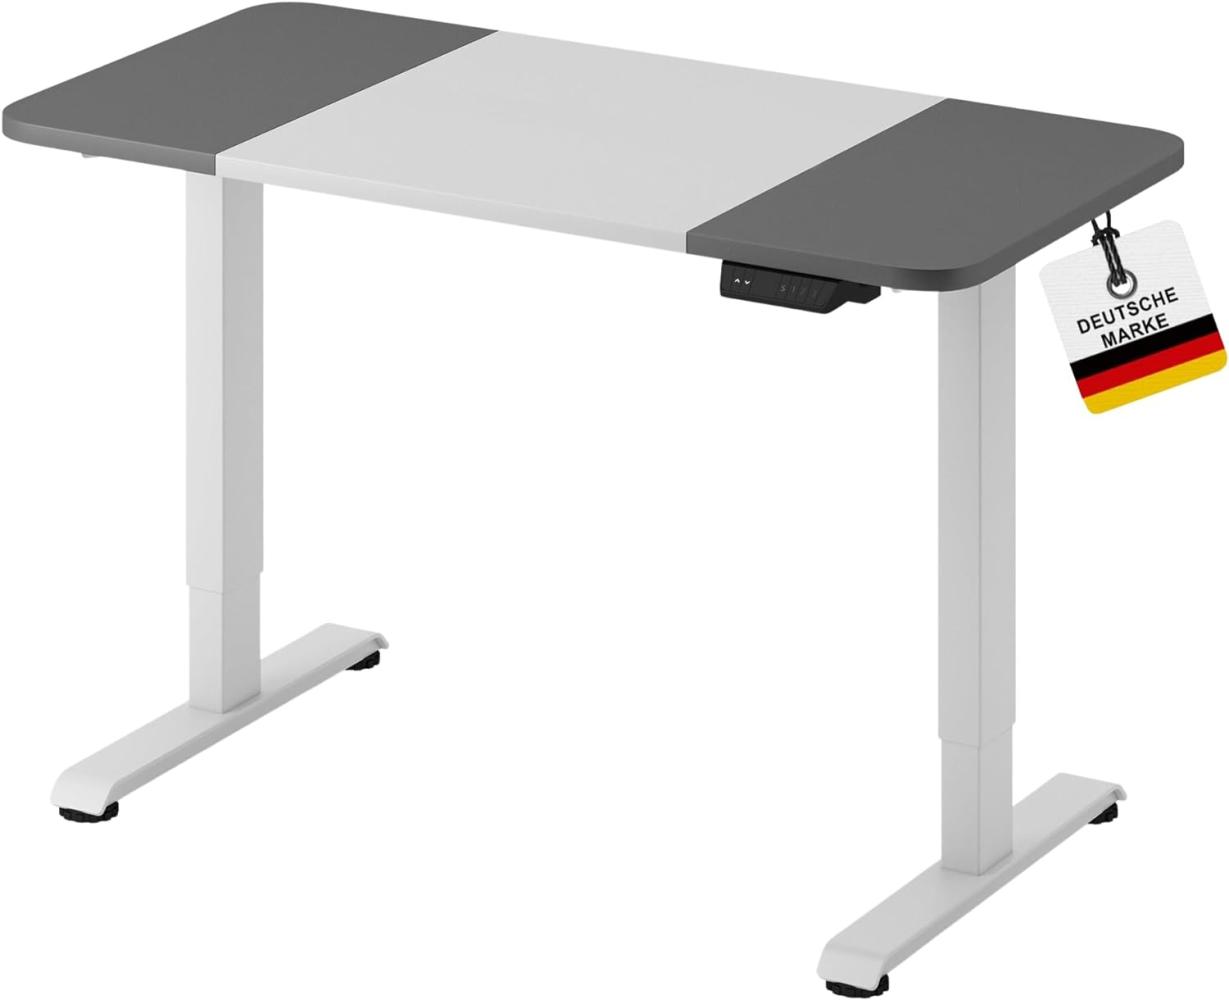 ALBATROS Höhenverstellbarer Schreibtisch LIFT 4P12, 120 x 60cm 120cm x 60xm, Weiss/Grau Bild 1